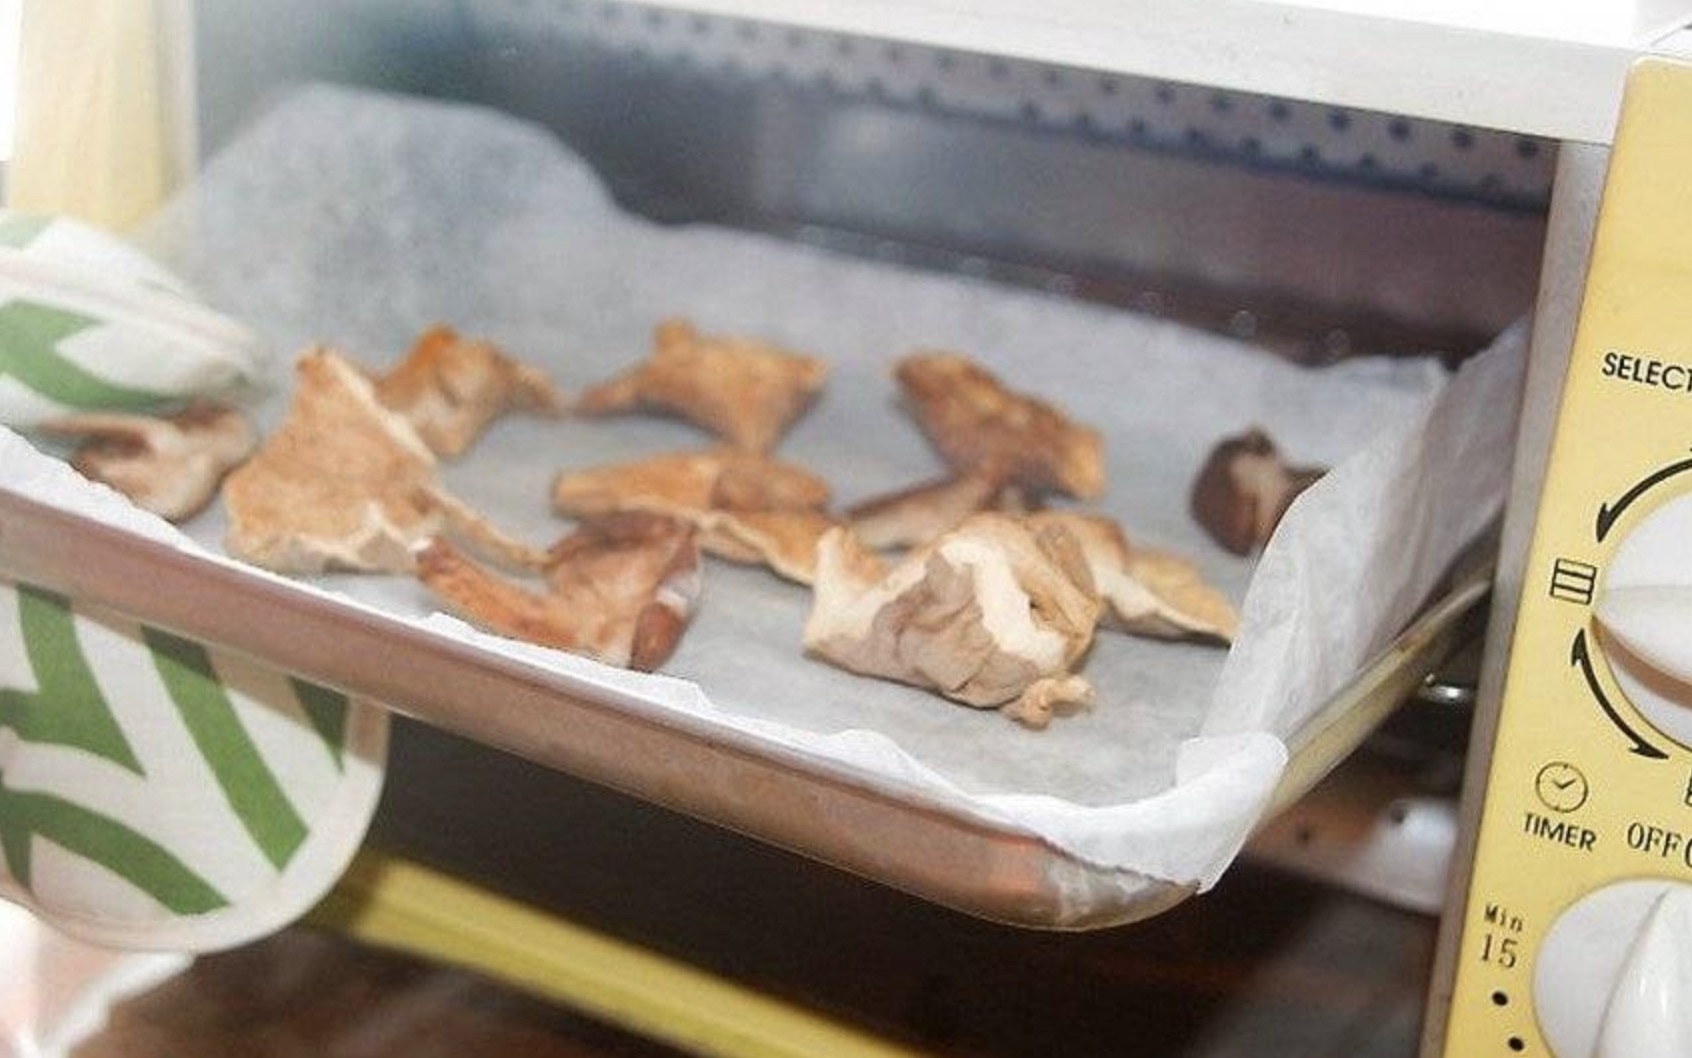 Сушка грибов в газовой духовке